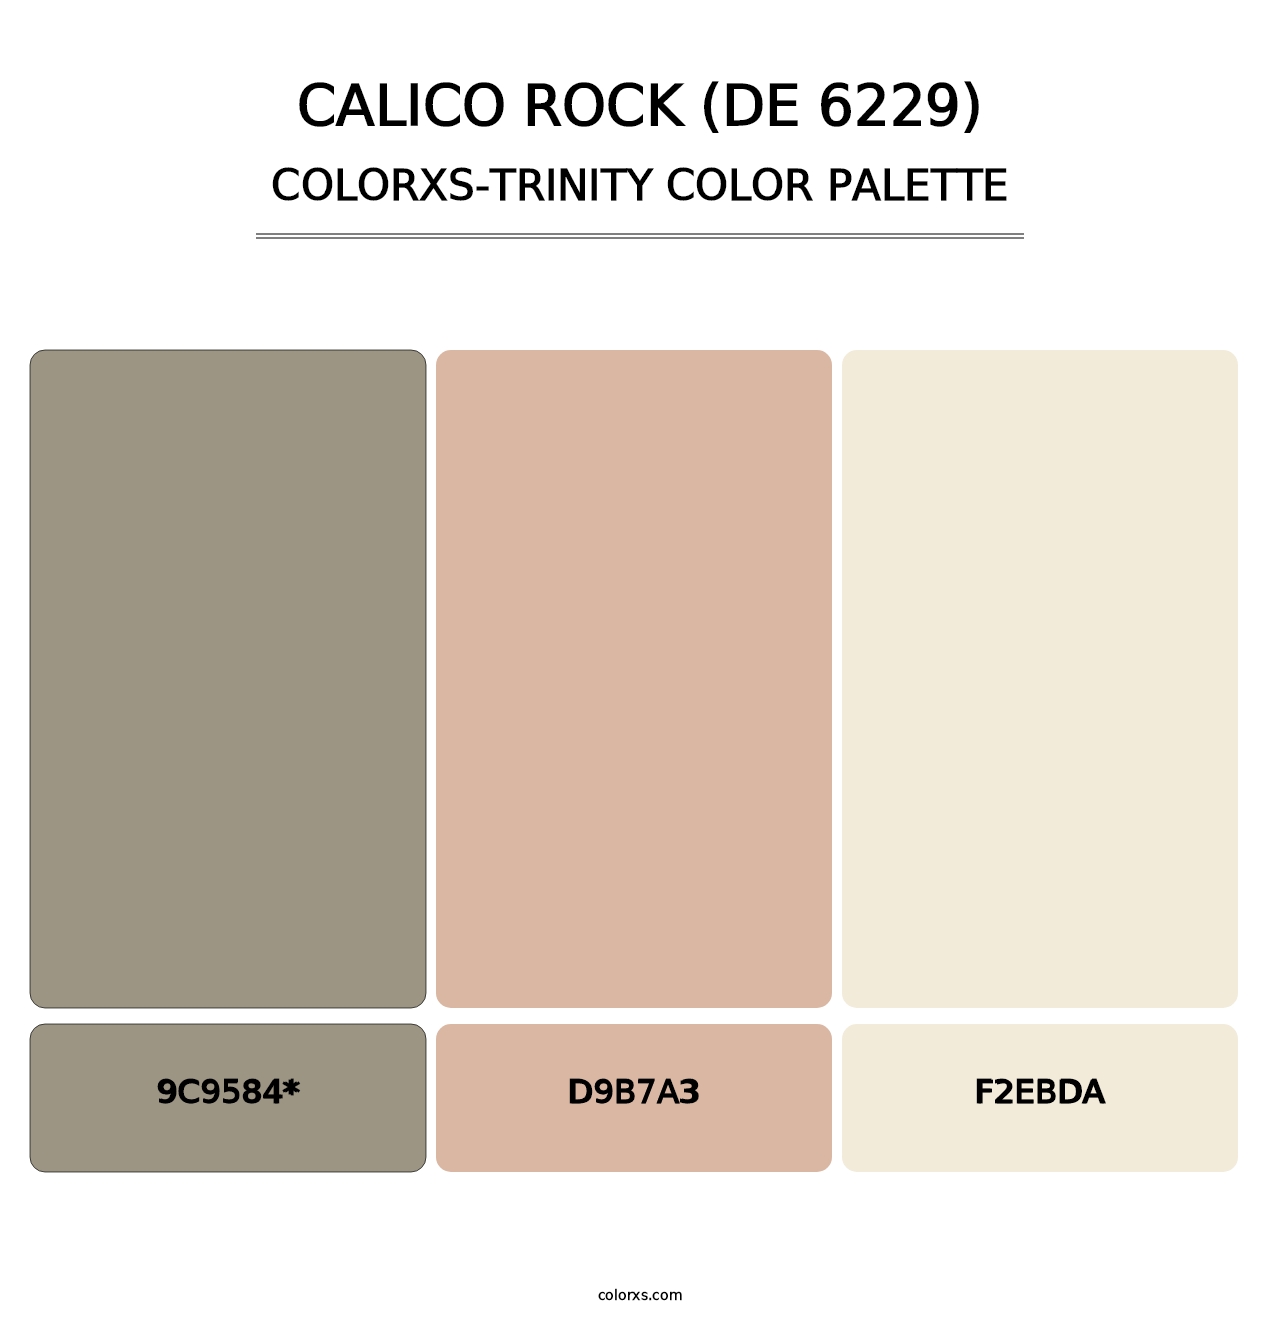 Calico Rock (DE 6229) - Colorxs Trinity Palette